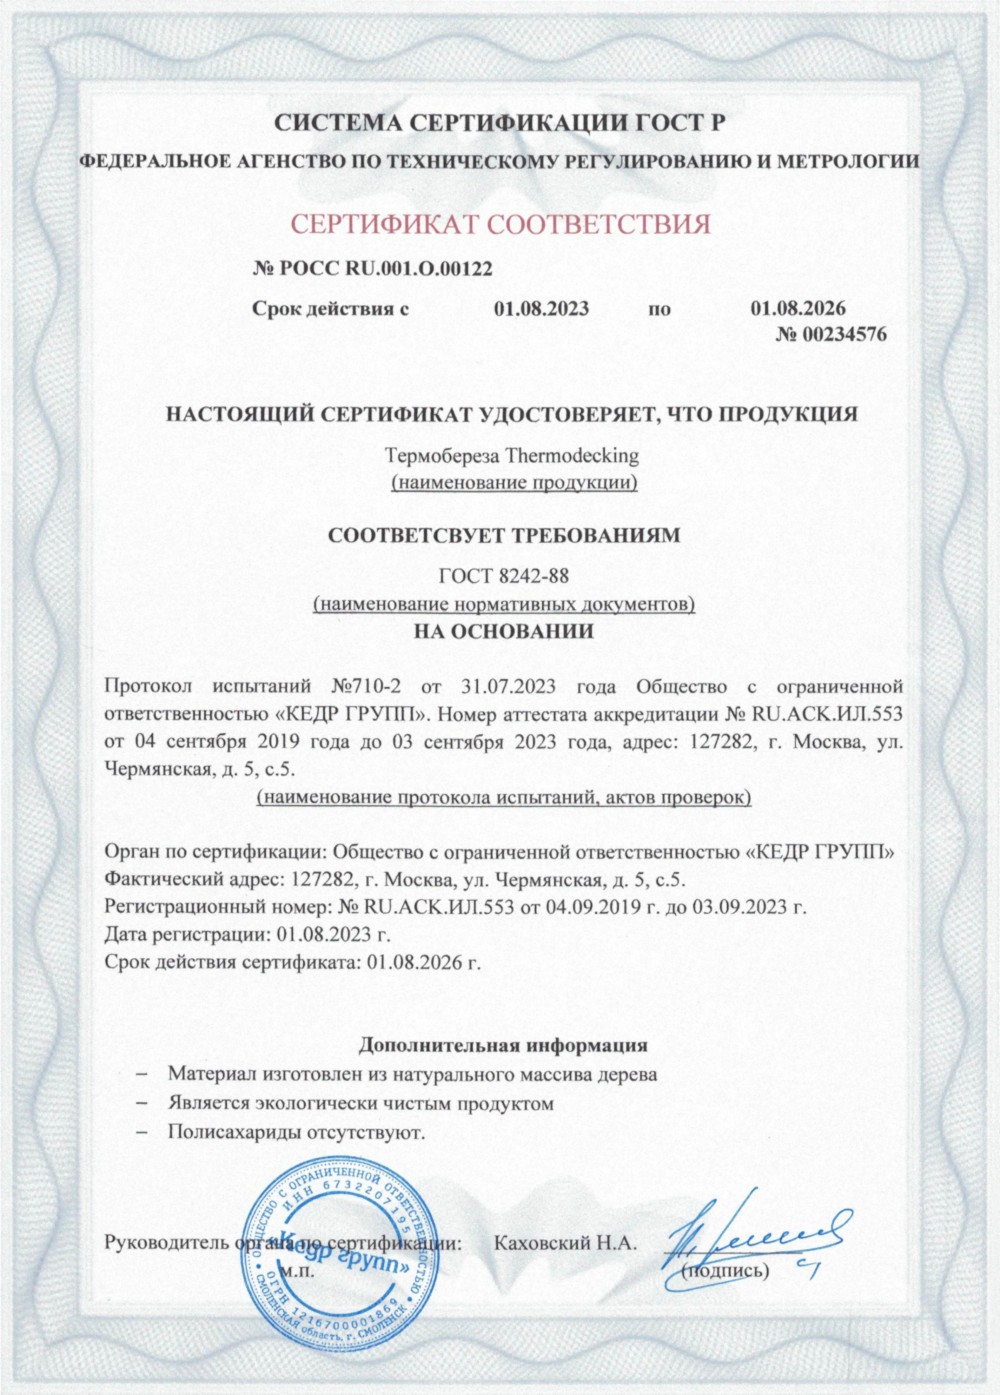 Сертификат соответствия - термобереза